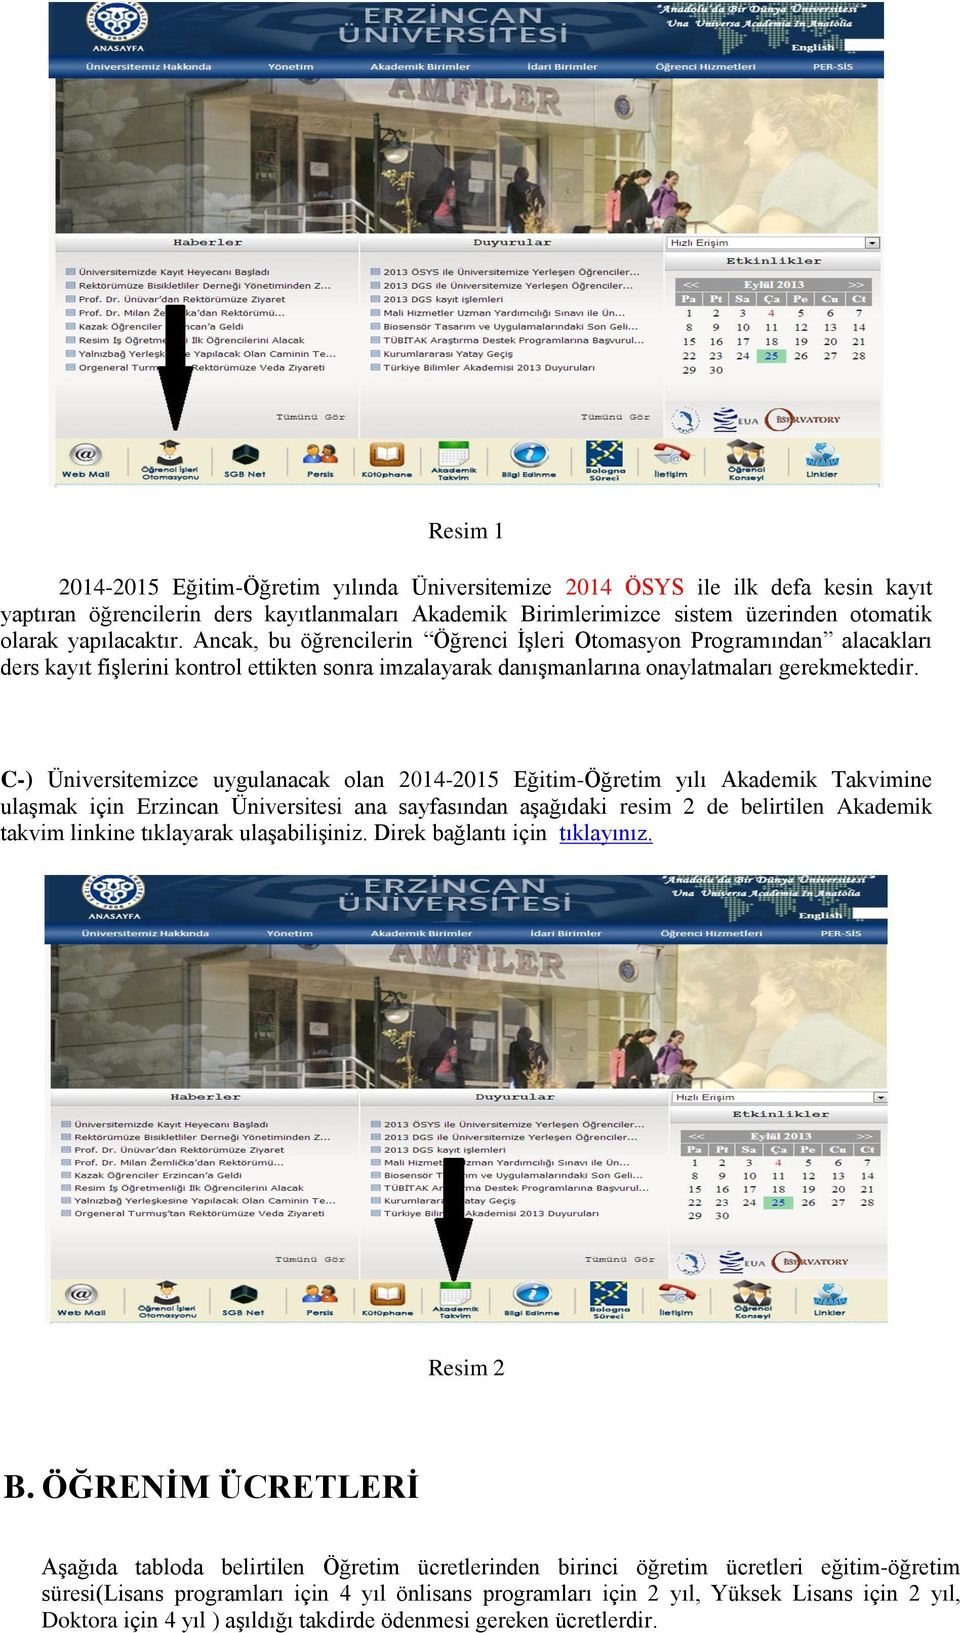 C-) Üniversitemizce uygulanacak olan 2014-2015 Eğitim-Öğretim yılı Akademik Takvimine ulaşmak için Erzincan Üniversitesi ana sayfasından aşağıdaki resim 2 de belirtilen Akademik takvim linkine